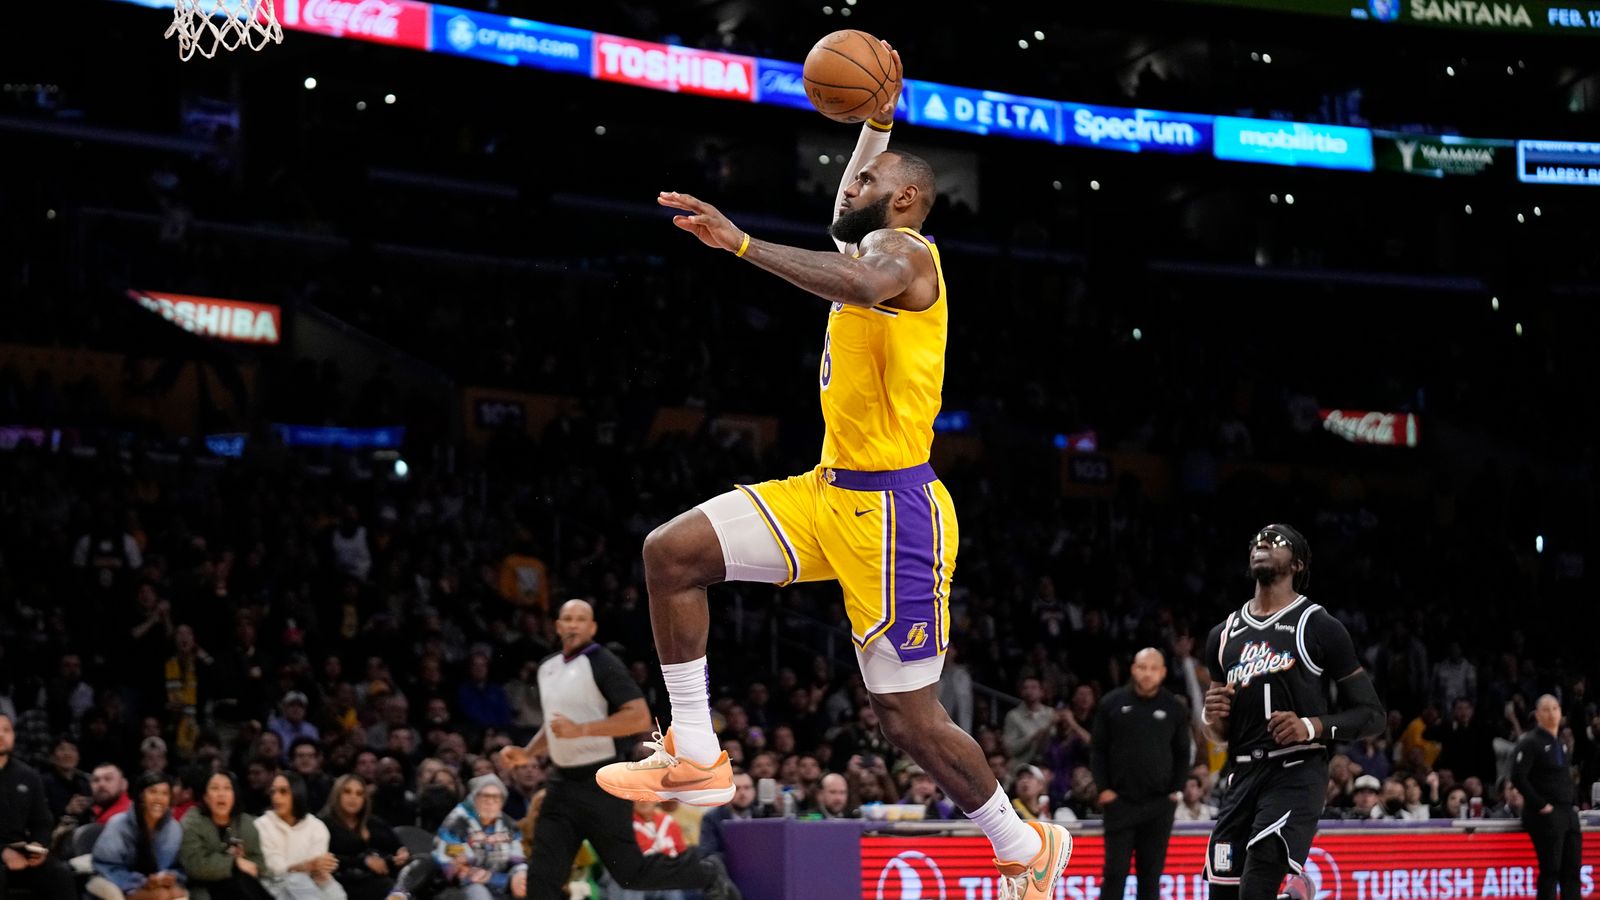 Lakers News: JR Smith Comfortable Challenging LeBron James